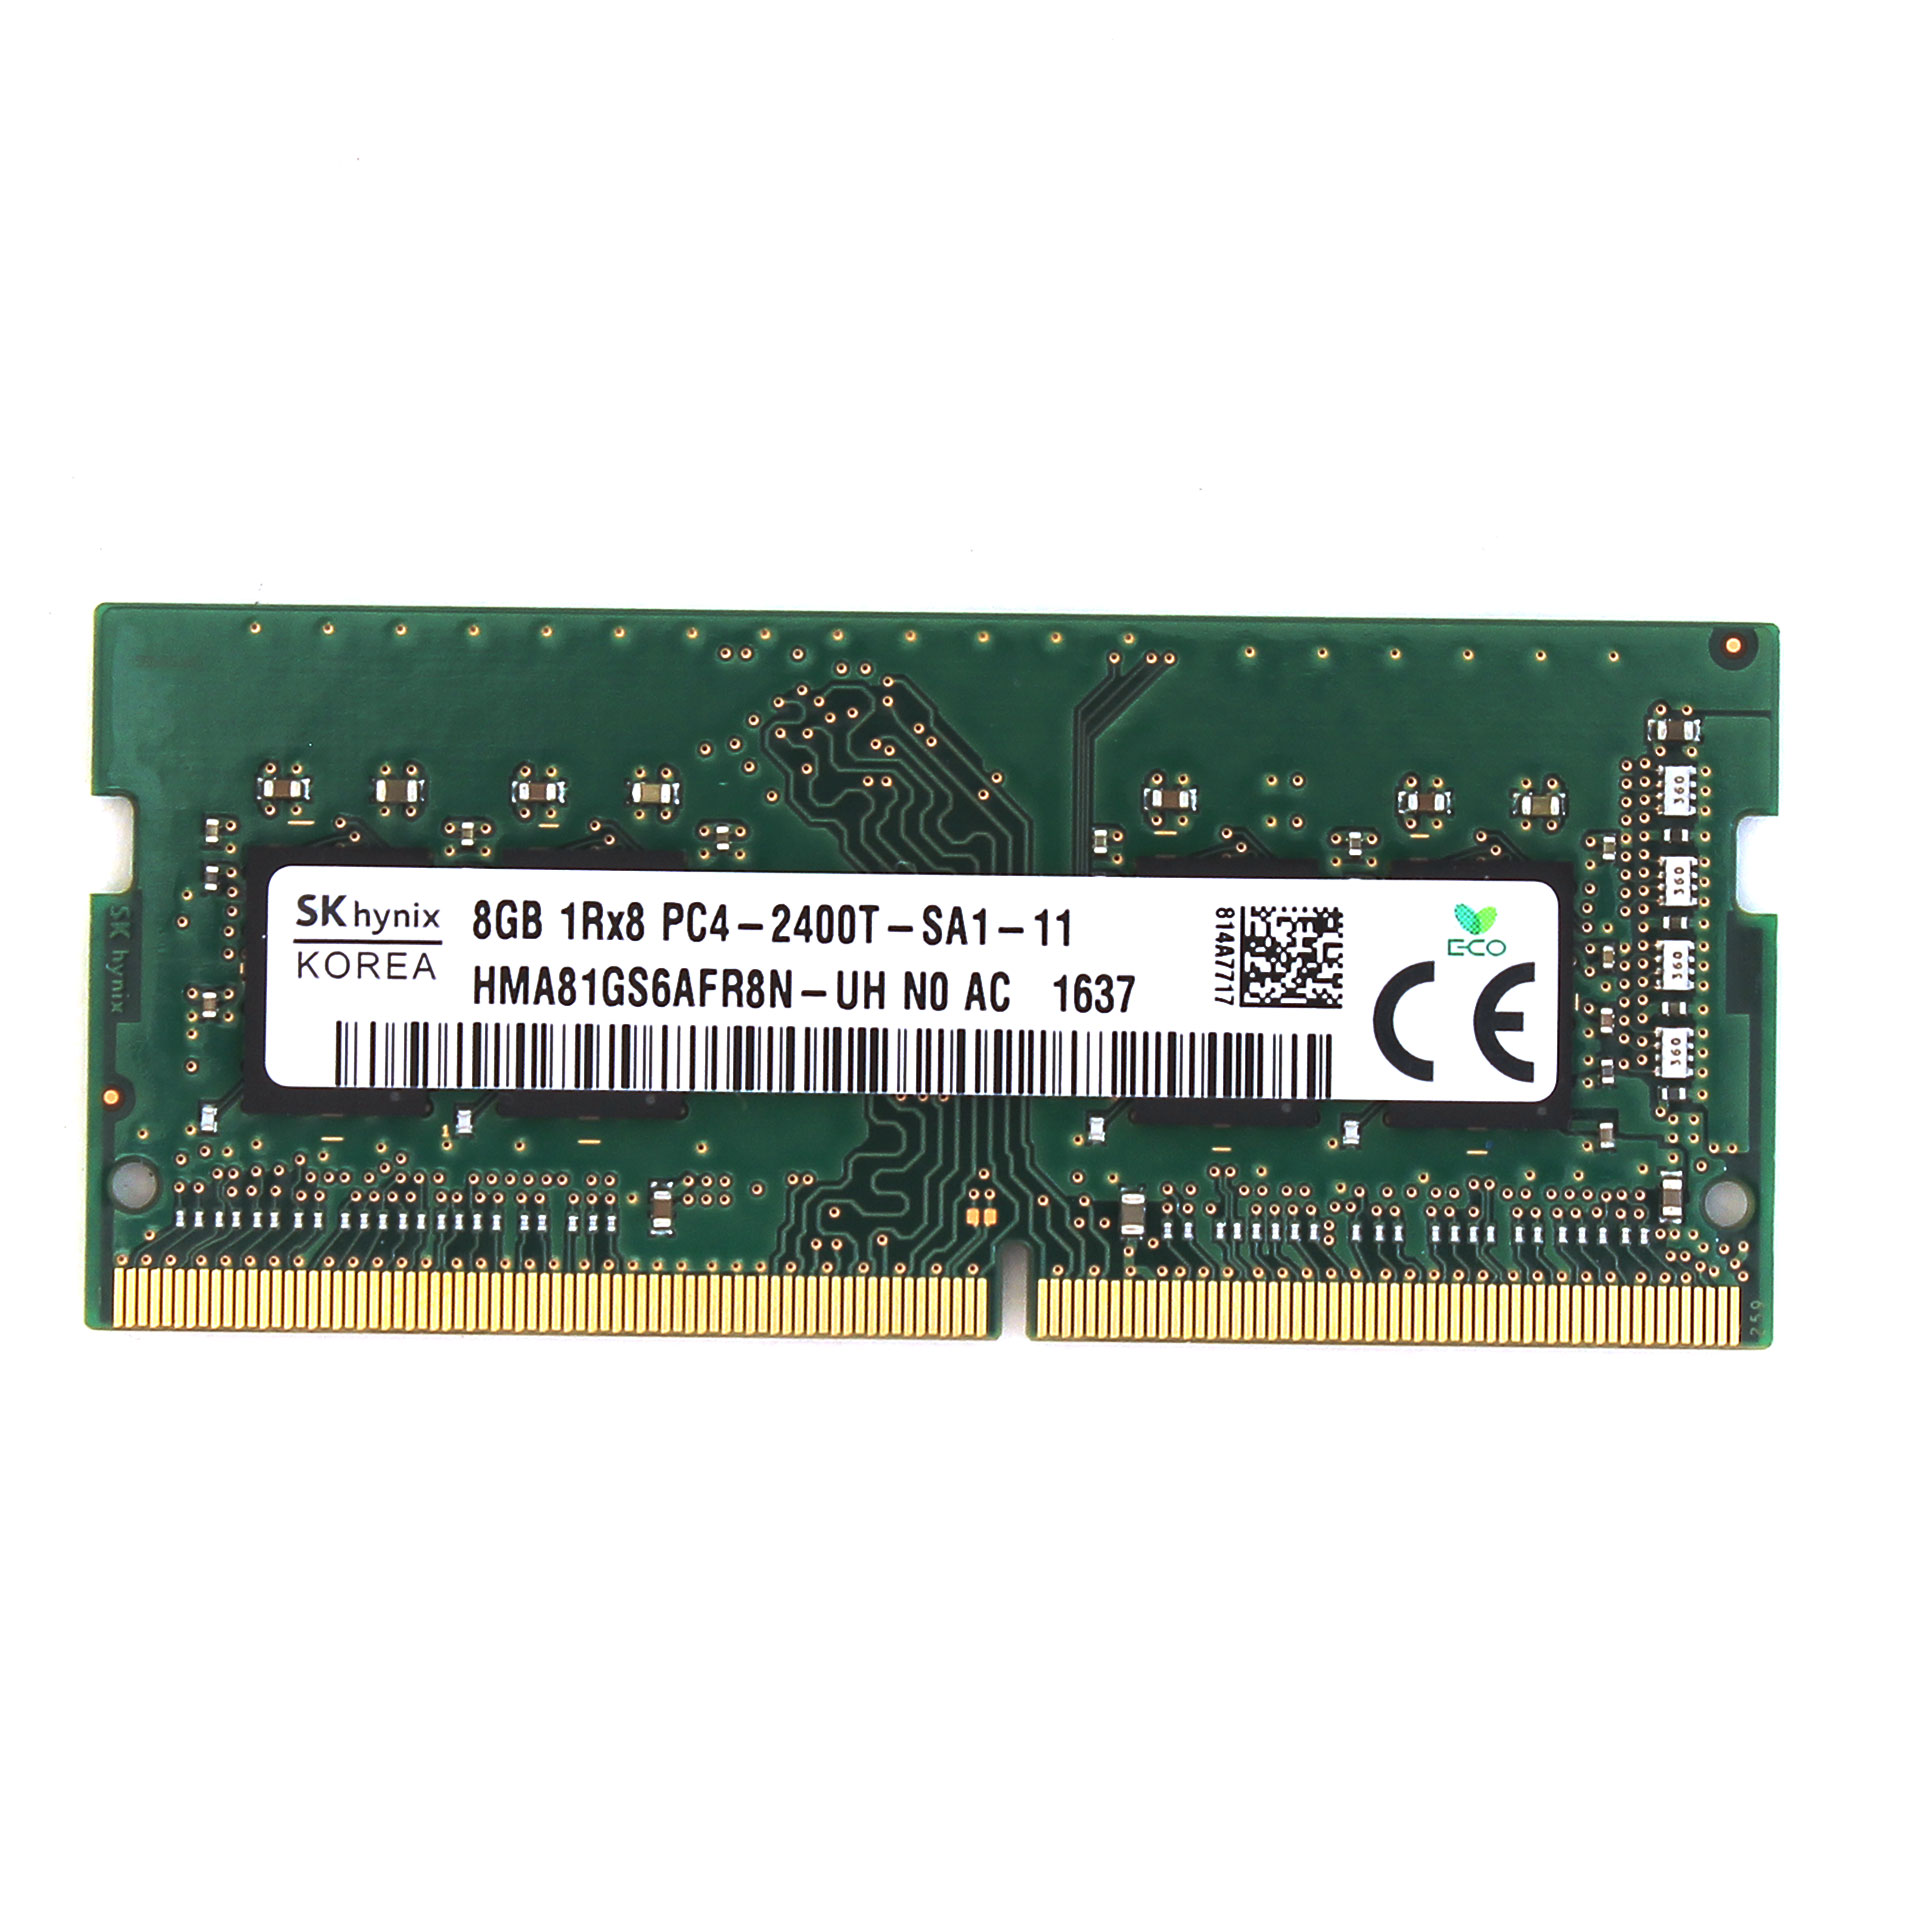 hver dag Alt det bedste Vedligeholdelse Sk Hynix Ddr4-2400 Sodimm 8gb/1gx8 Cl17 Laptop Memory RAM Compeve Compenet Sk  Hynix Ddr4?2400 Sodimm 8gb/1gx8 Cl17 Laptop Memory RAM [HMA81GS6AFR8N-UH] -  $78.50 : Professional Multi Monitor Workstations, Graphics Card Experts